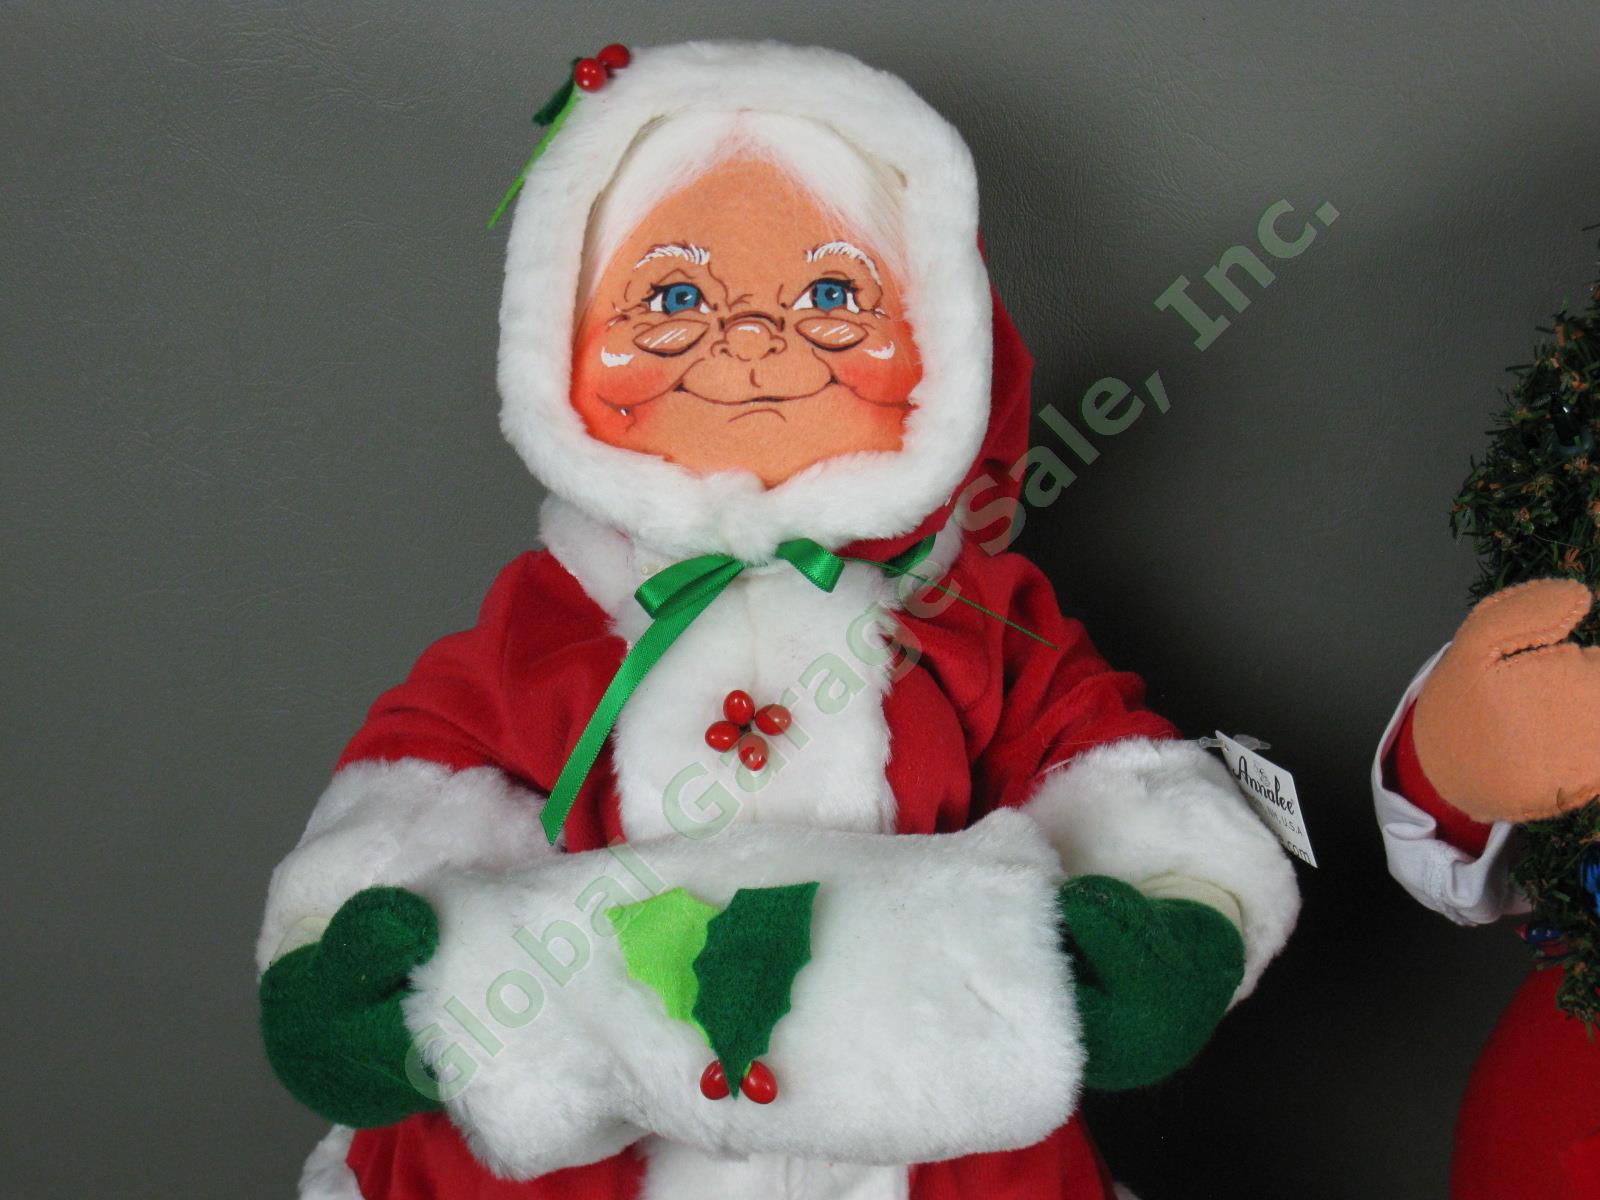 Annalee Xmas Lot 18" Santa Claus Yuletide Wreath Mrs Holly Berry 16" Reindeer NR 2